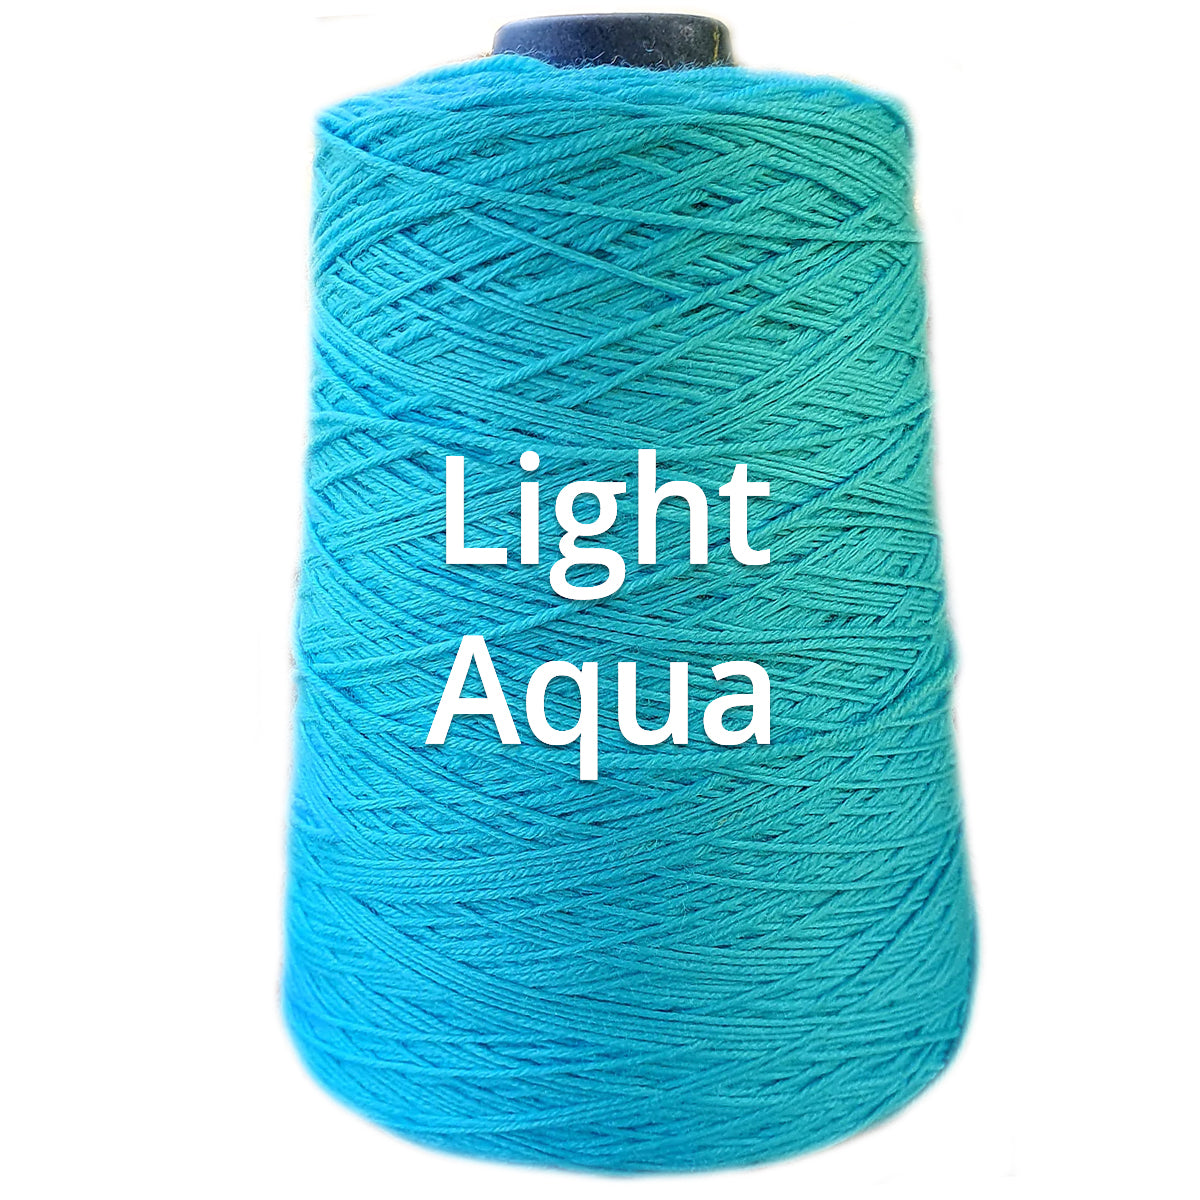 Light Aqua - Nundle Collection 8 ply Chaffey Yarn 400g Cone